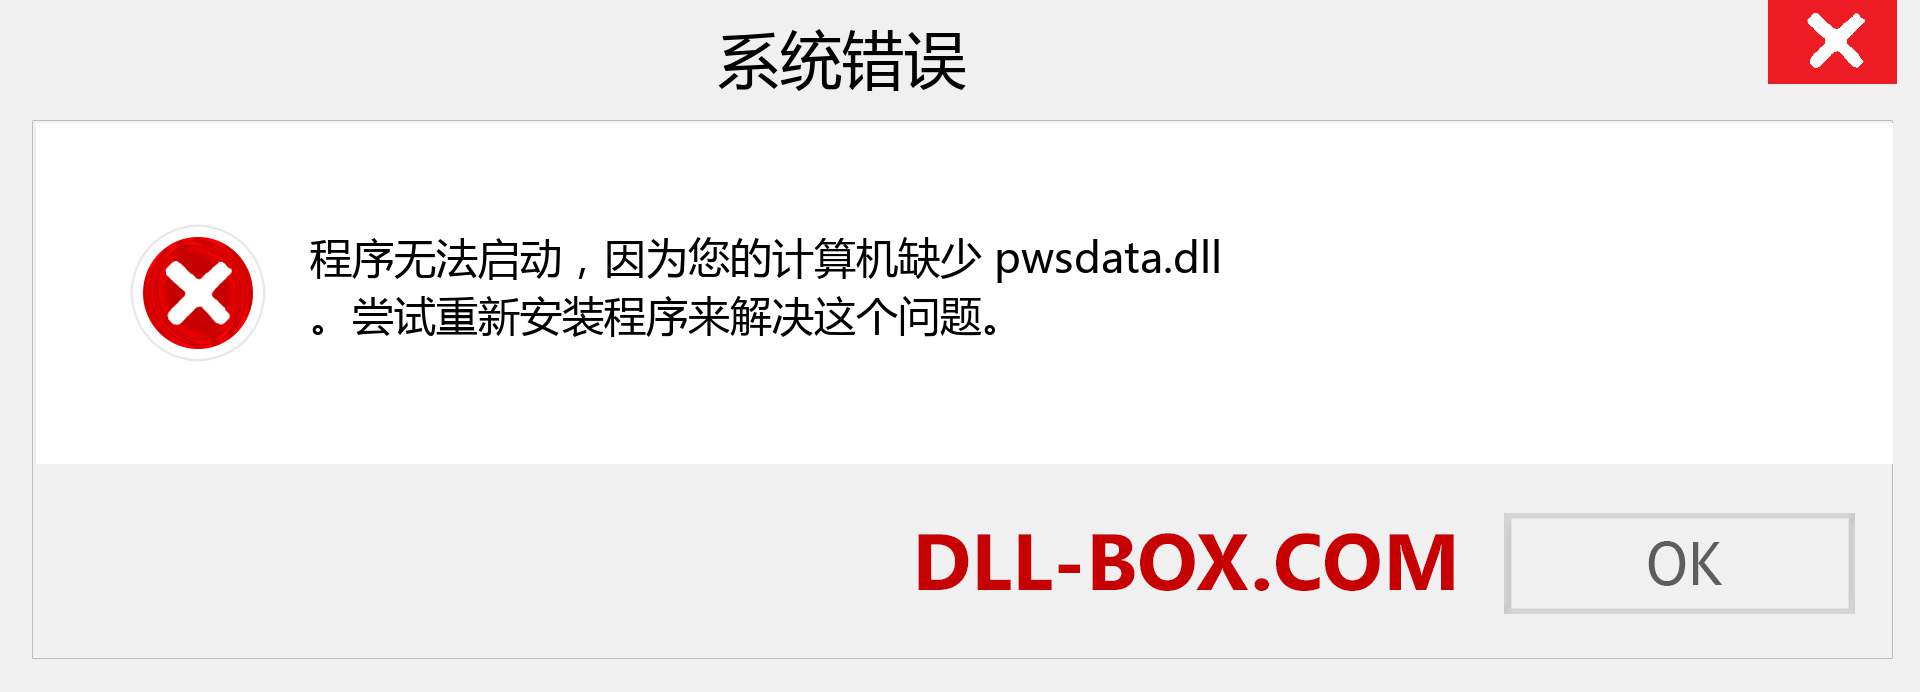 pwsdata.dll 文件丢失？。 适用于 Windows 7、8、10 的下载 - 修复 Windows、照片、图像上的 pwsdata dll 丢失错误